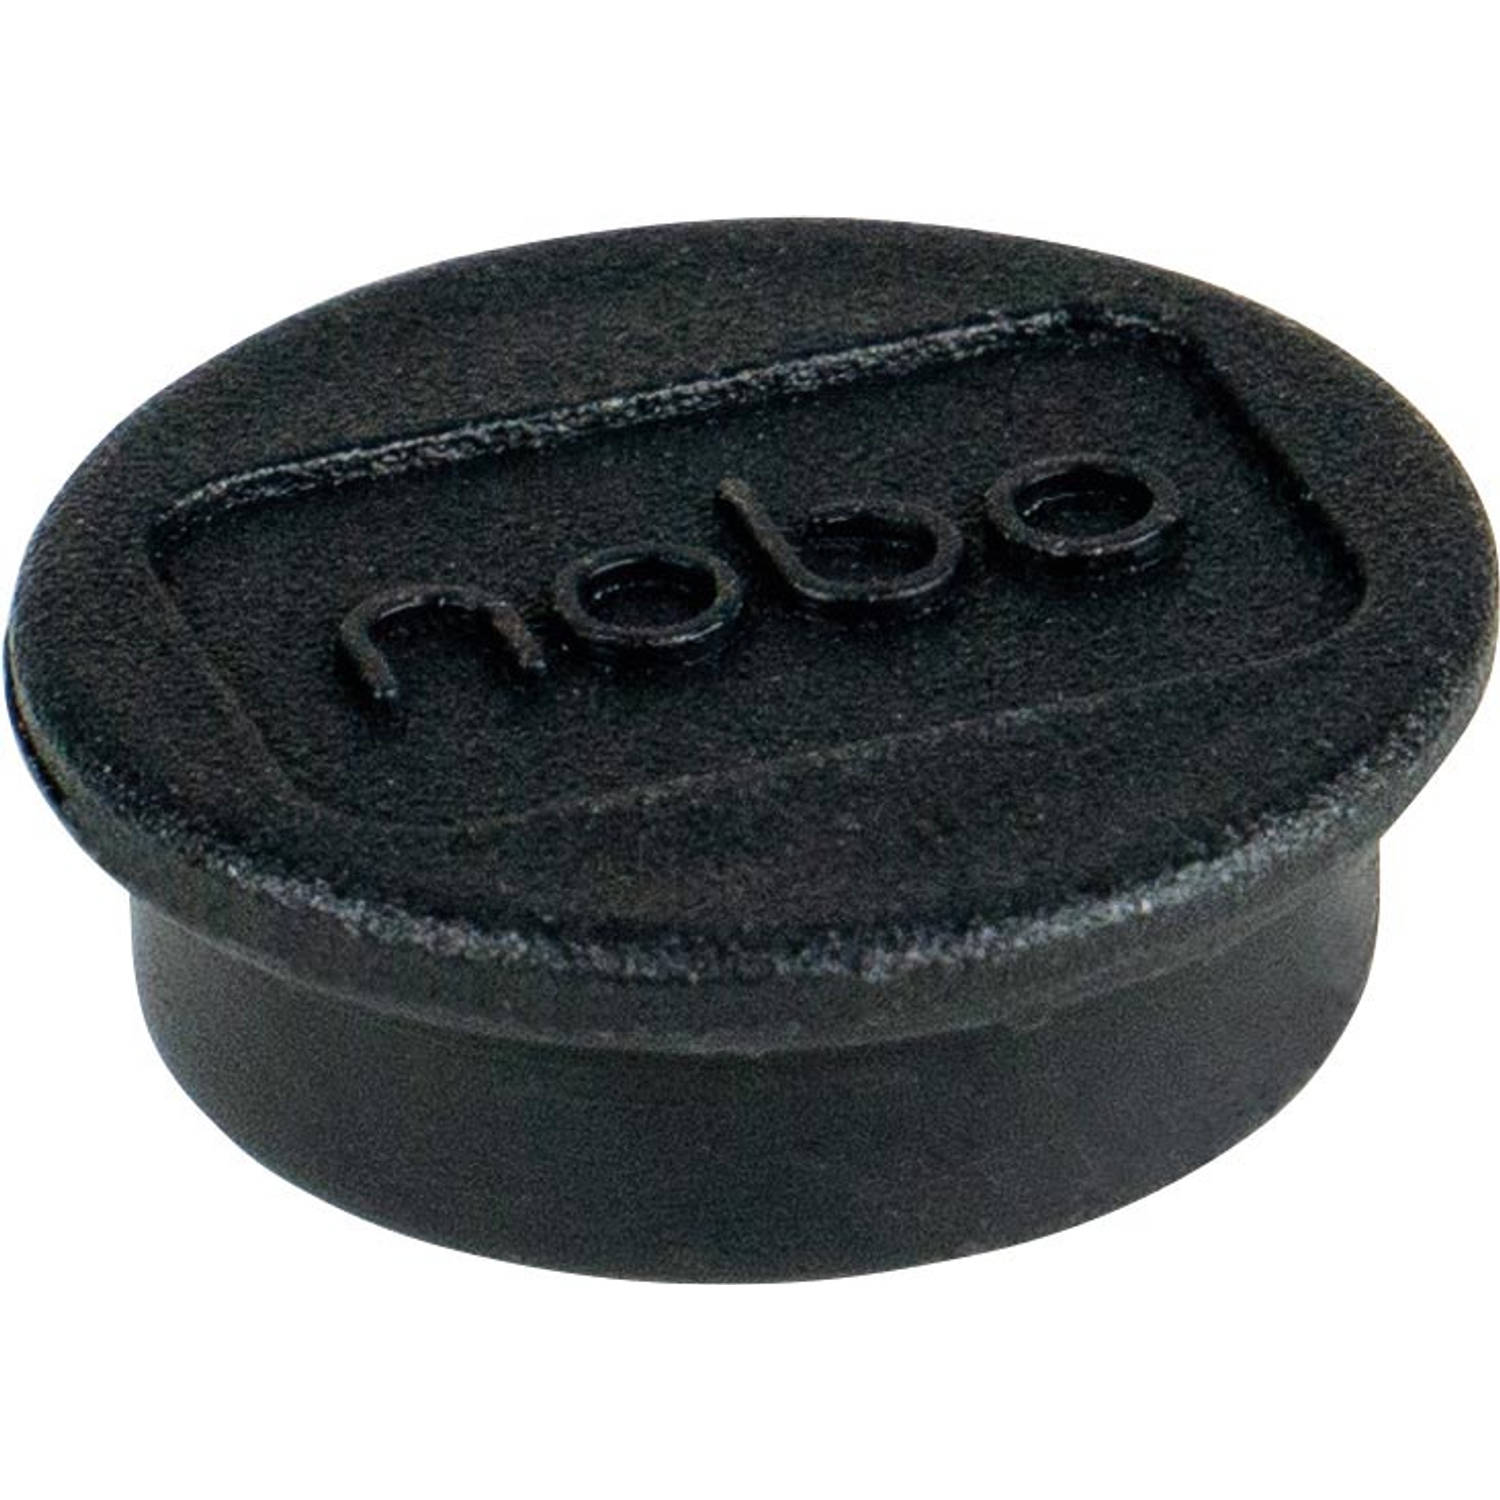 Nobo magneten voor whiteboard diameter van 13 mm, pak van 10 stuks, zwart